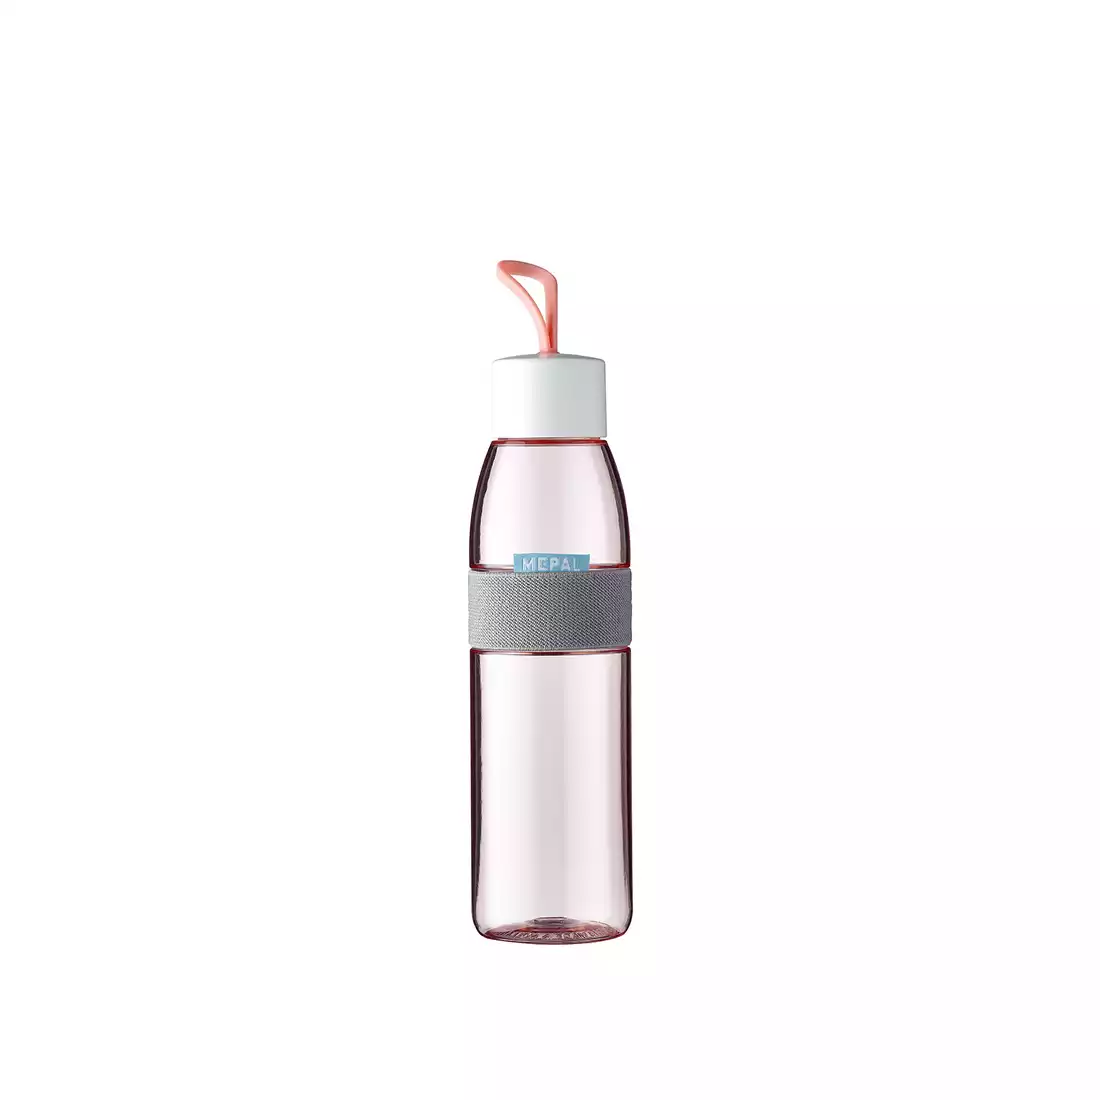 MEPAL ELILIPSE butelka na wodę 500 ml, nordic pink